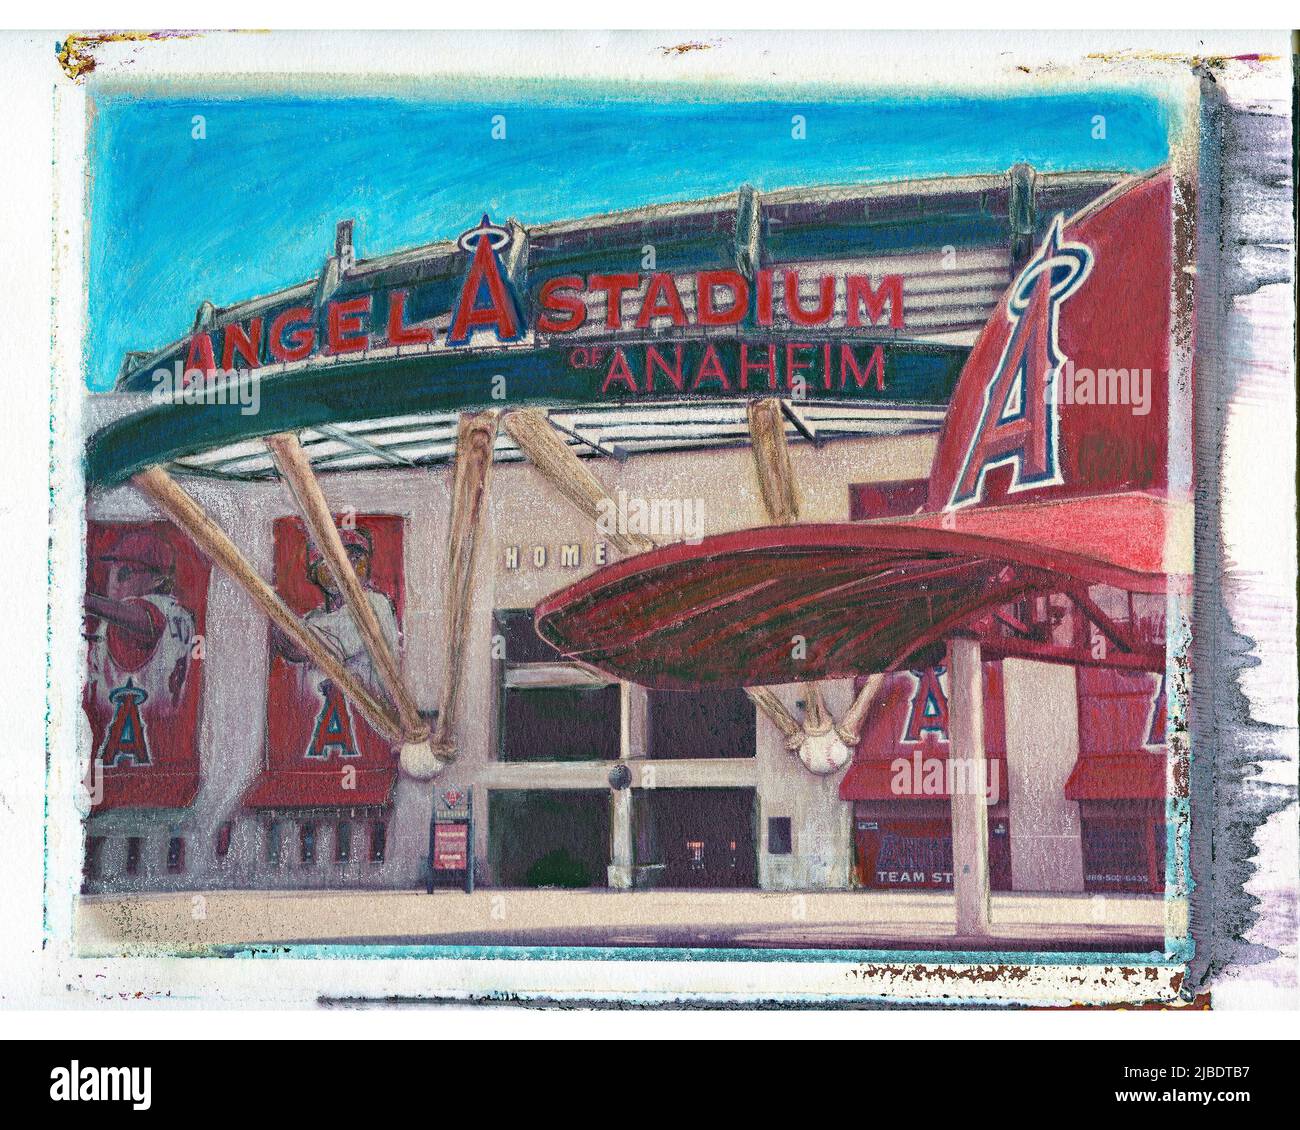 MLB Anaheim Angels Stadium Stock Photo